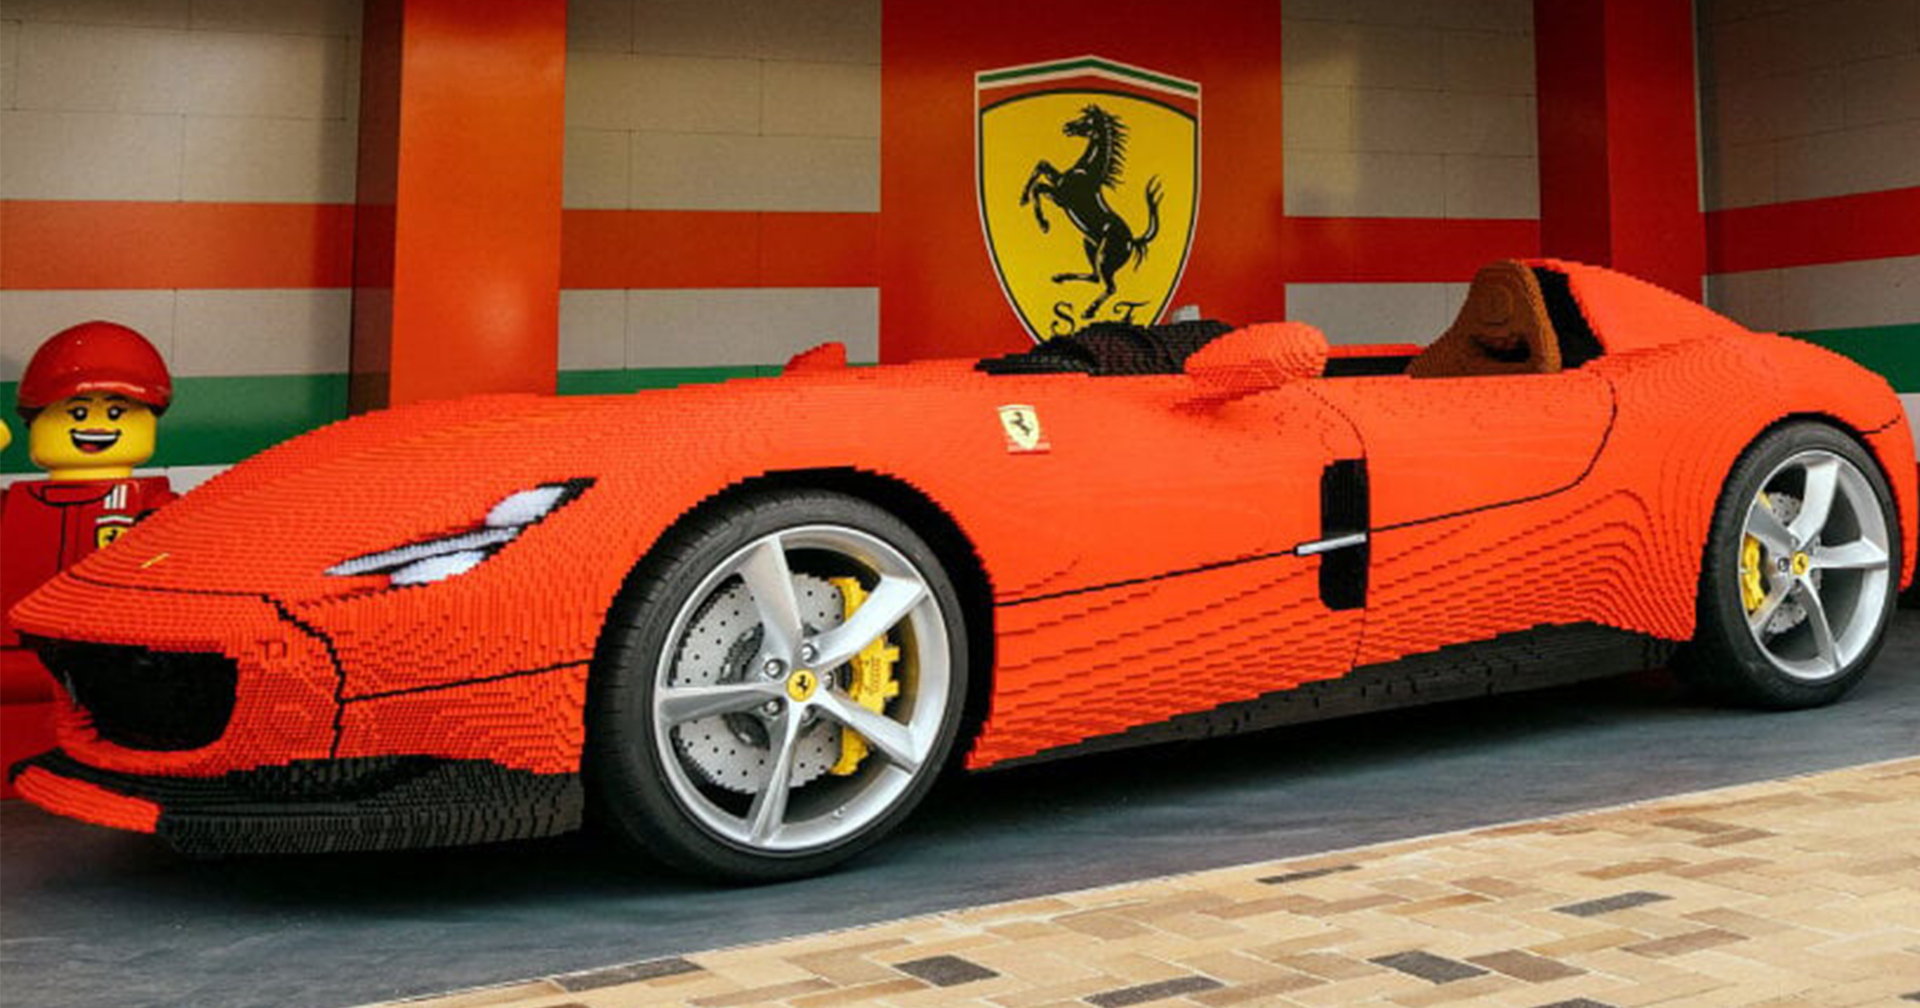 เป็นเจ้าของซูเปอร์คาร์ Ferrari (ที่ขับขี่ไม่ได้) ด้วย LEGO กว่า 383,610 ชิ้น